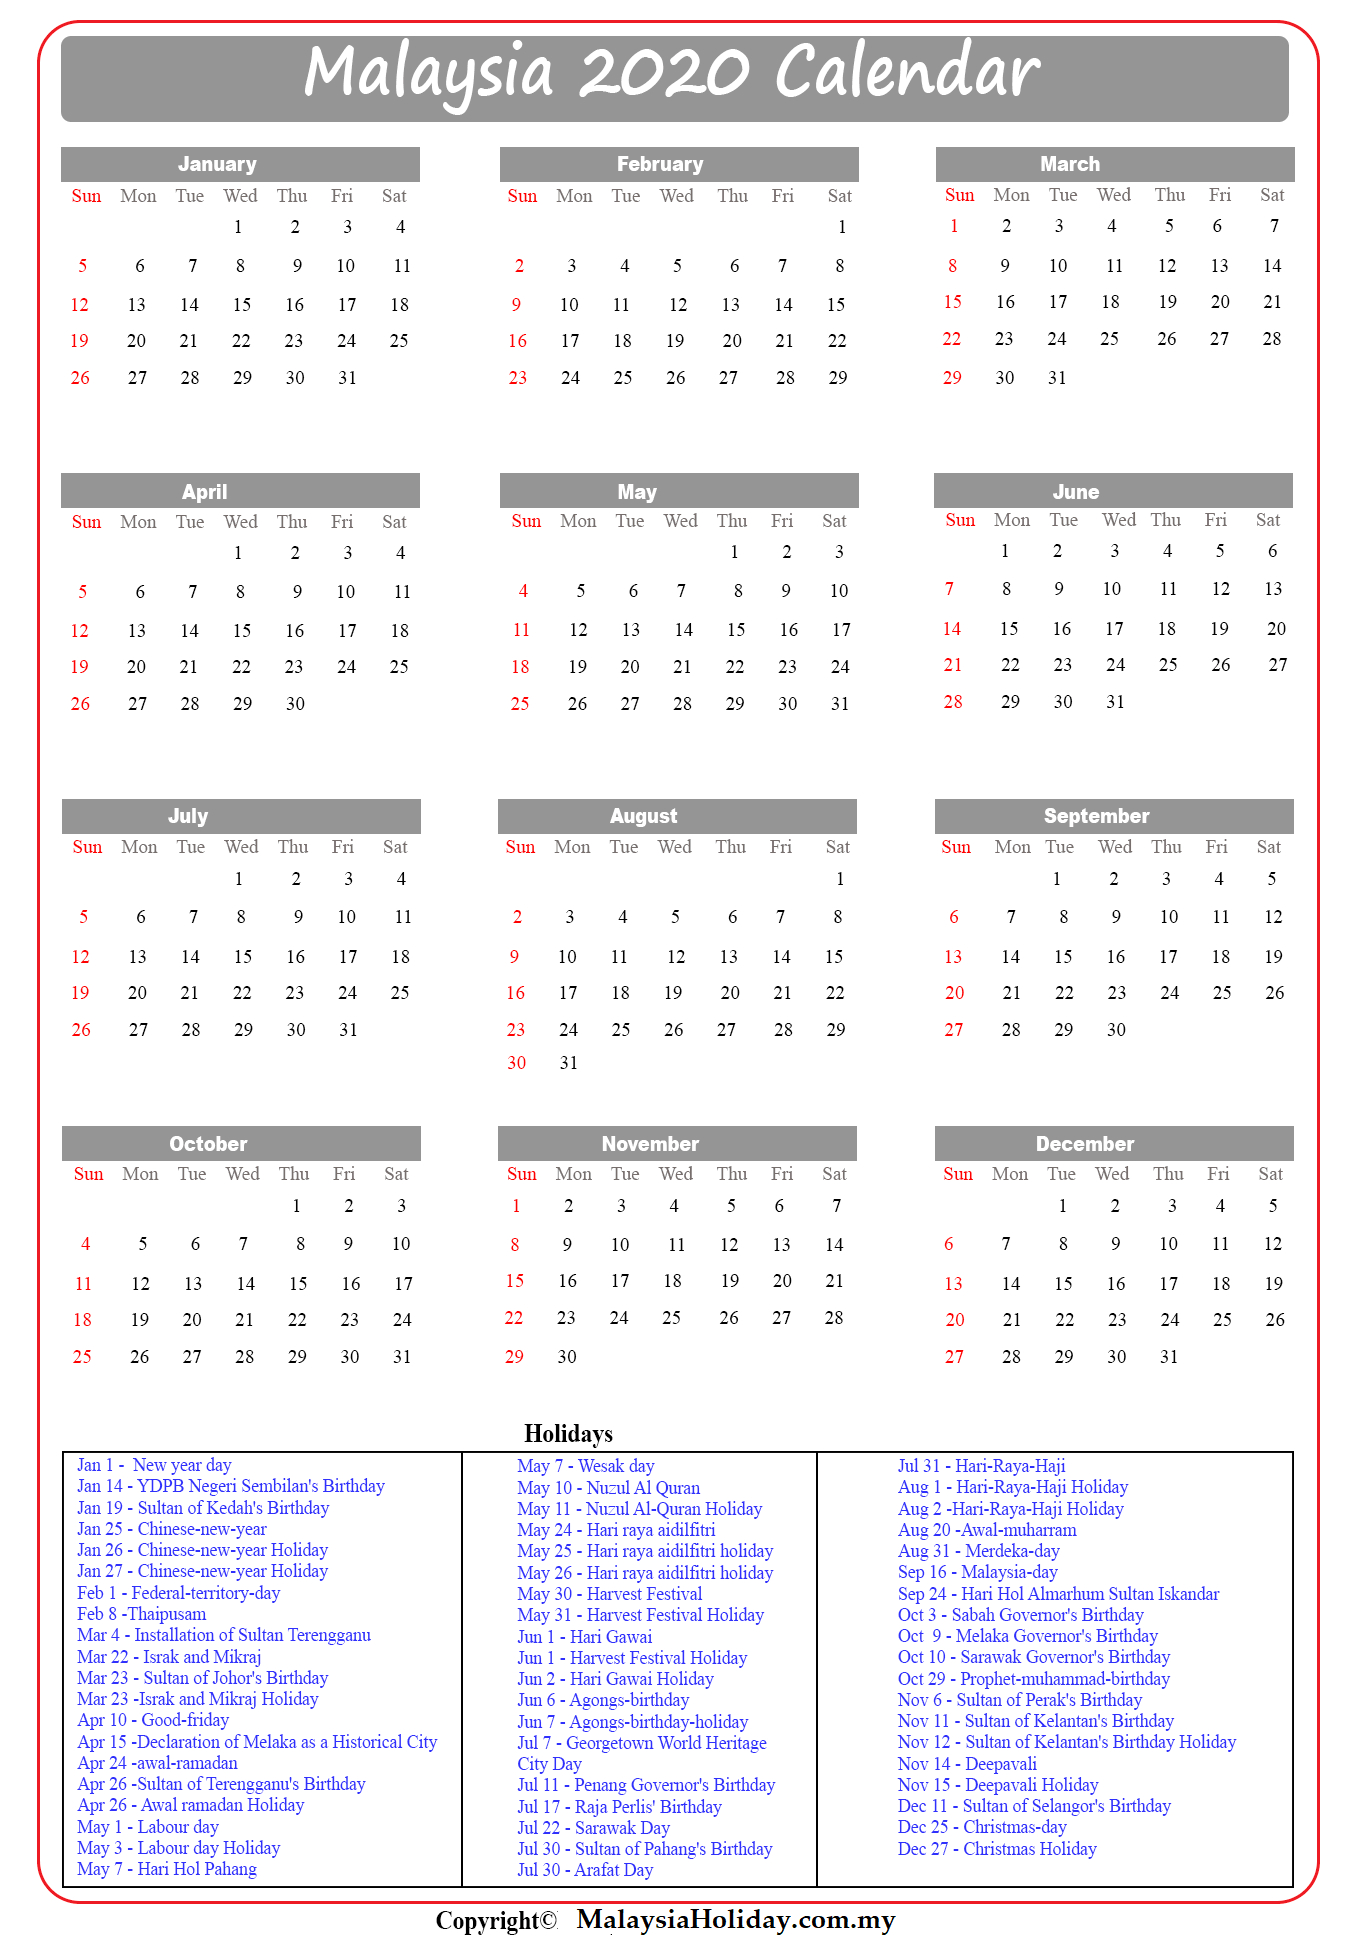 Public Holiday 2020 : Free Australia Public Holidays 2020 Calendar-2022 Calendar South Australia With Public Holidays